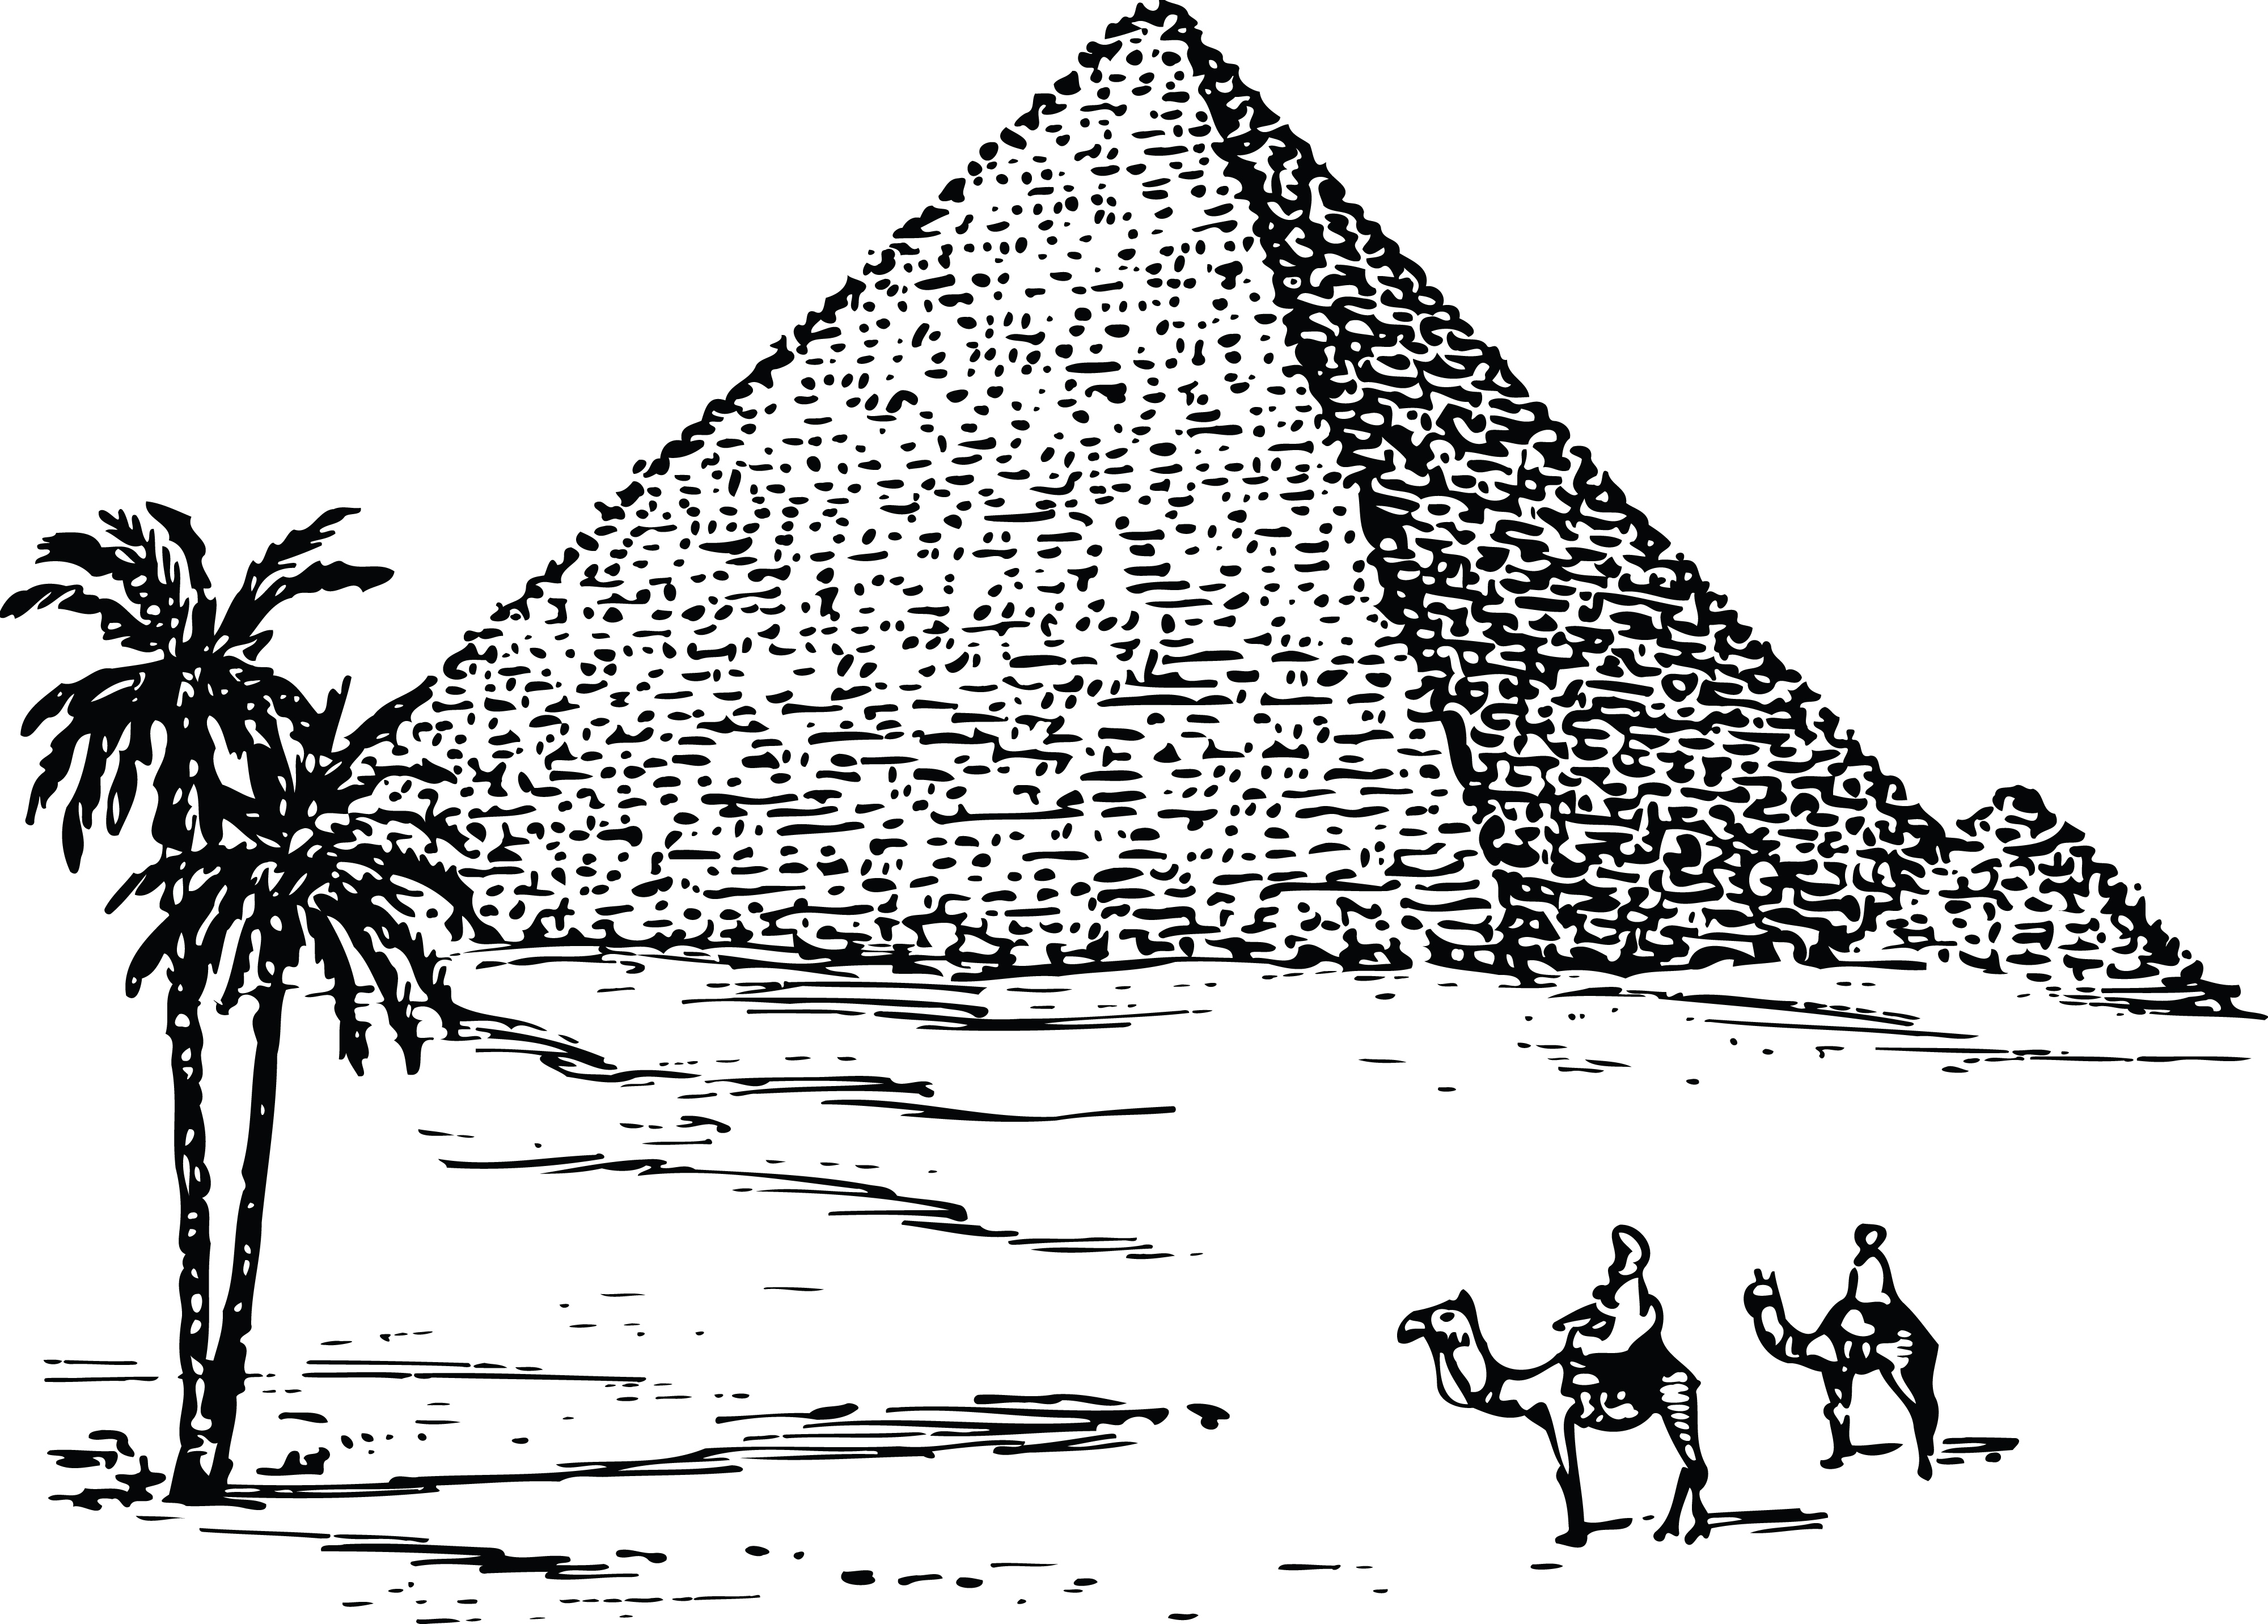 Pyramids Of Giza Clip Art